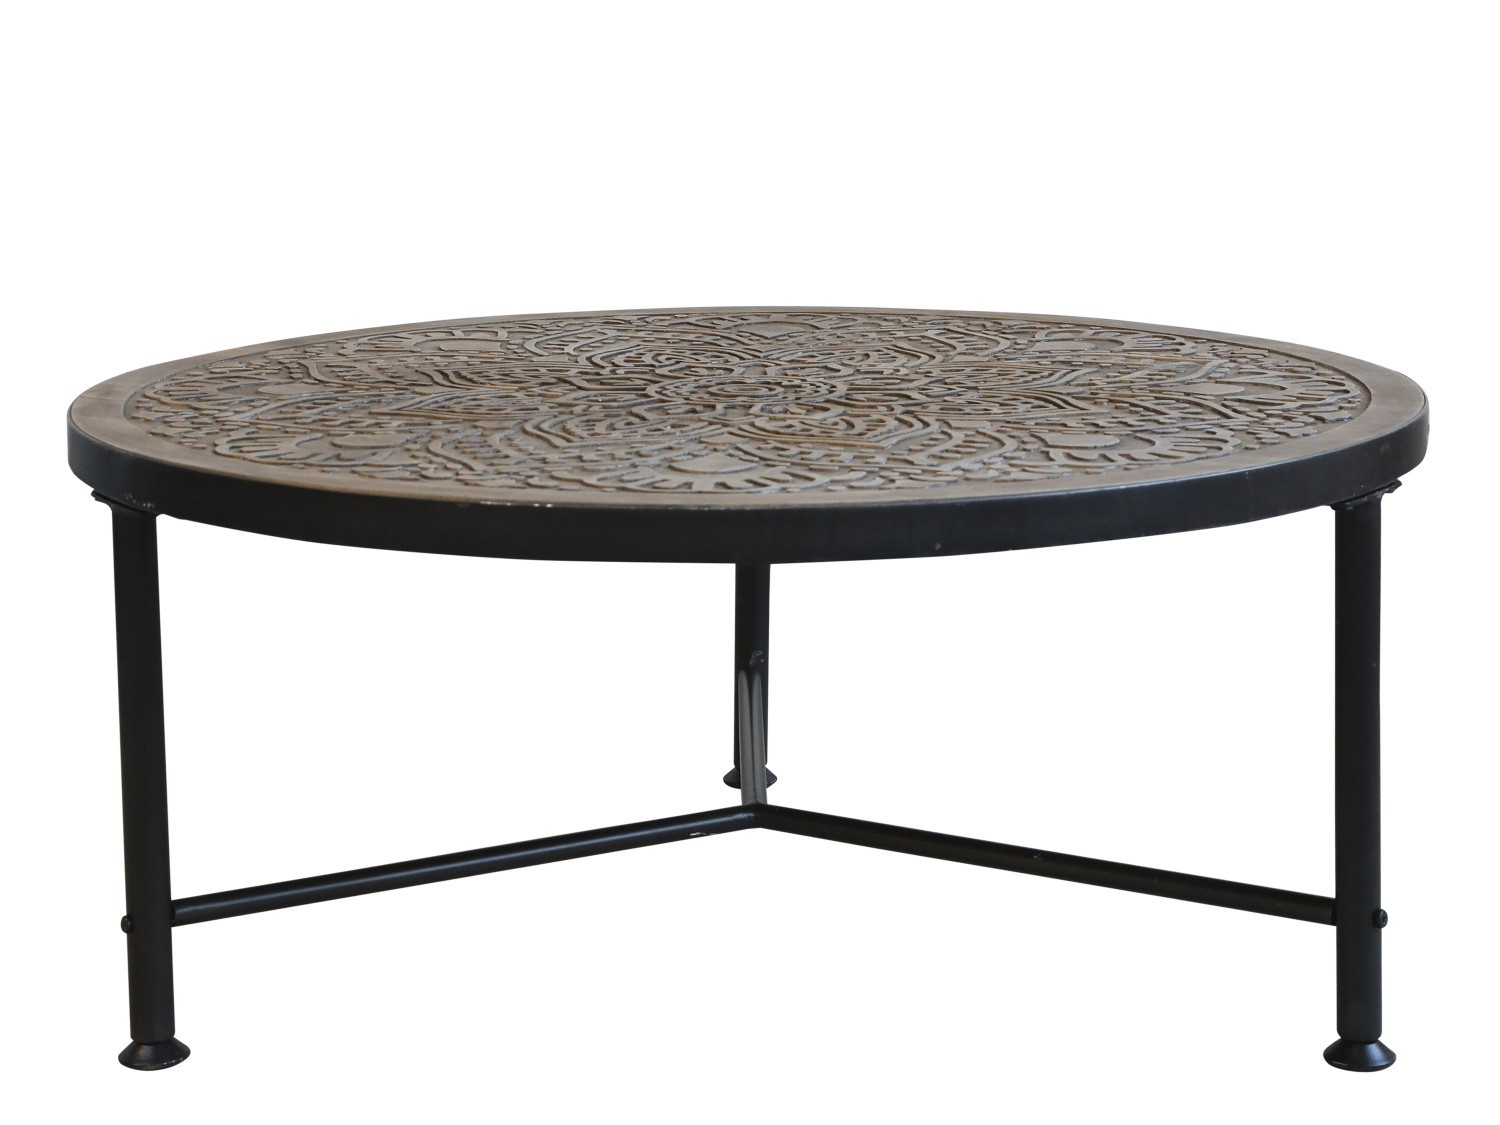 Kovový konferenční stůl s dřevěnou deskou s ornamenty Coffee - Ø 80*36cm Chic Antique